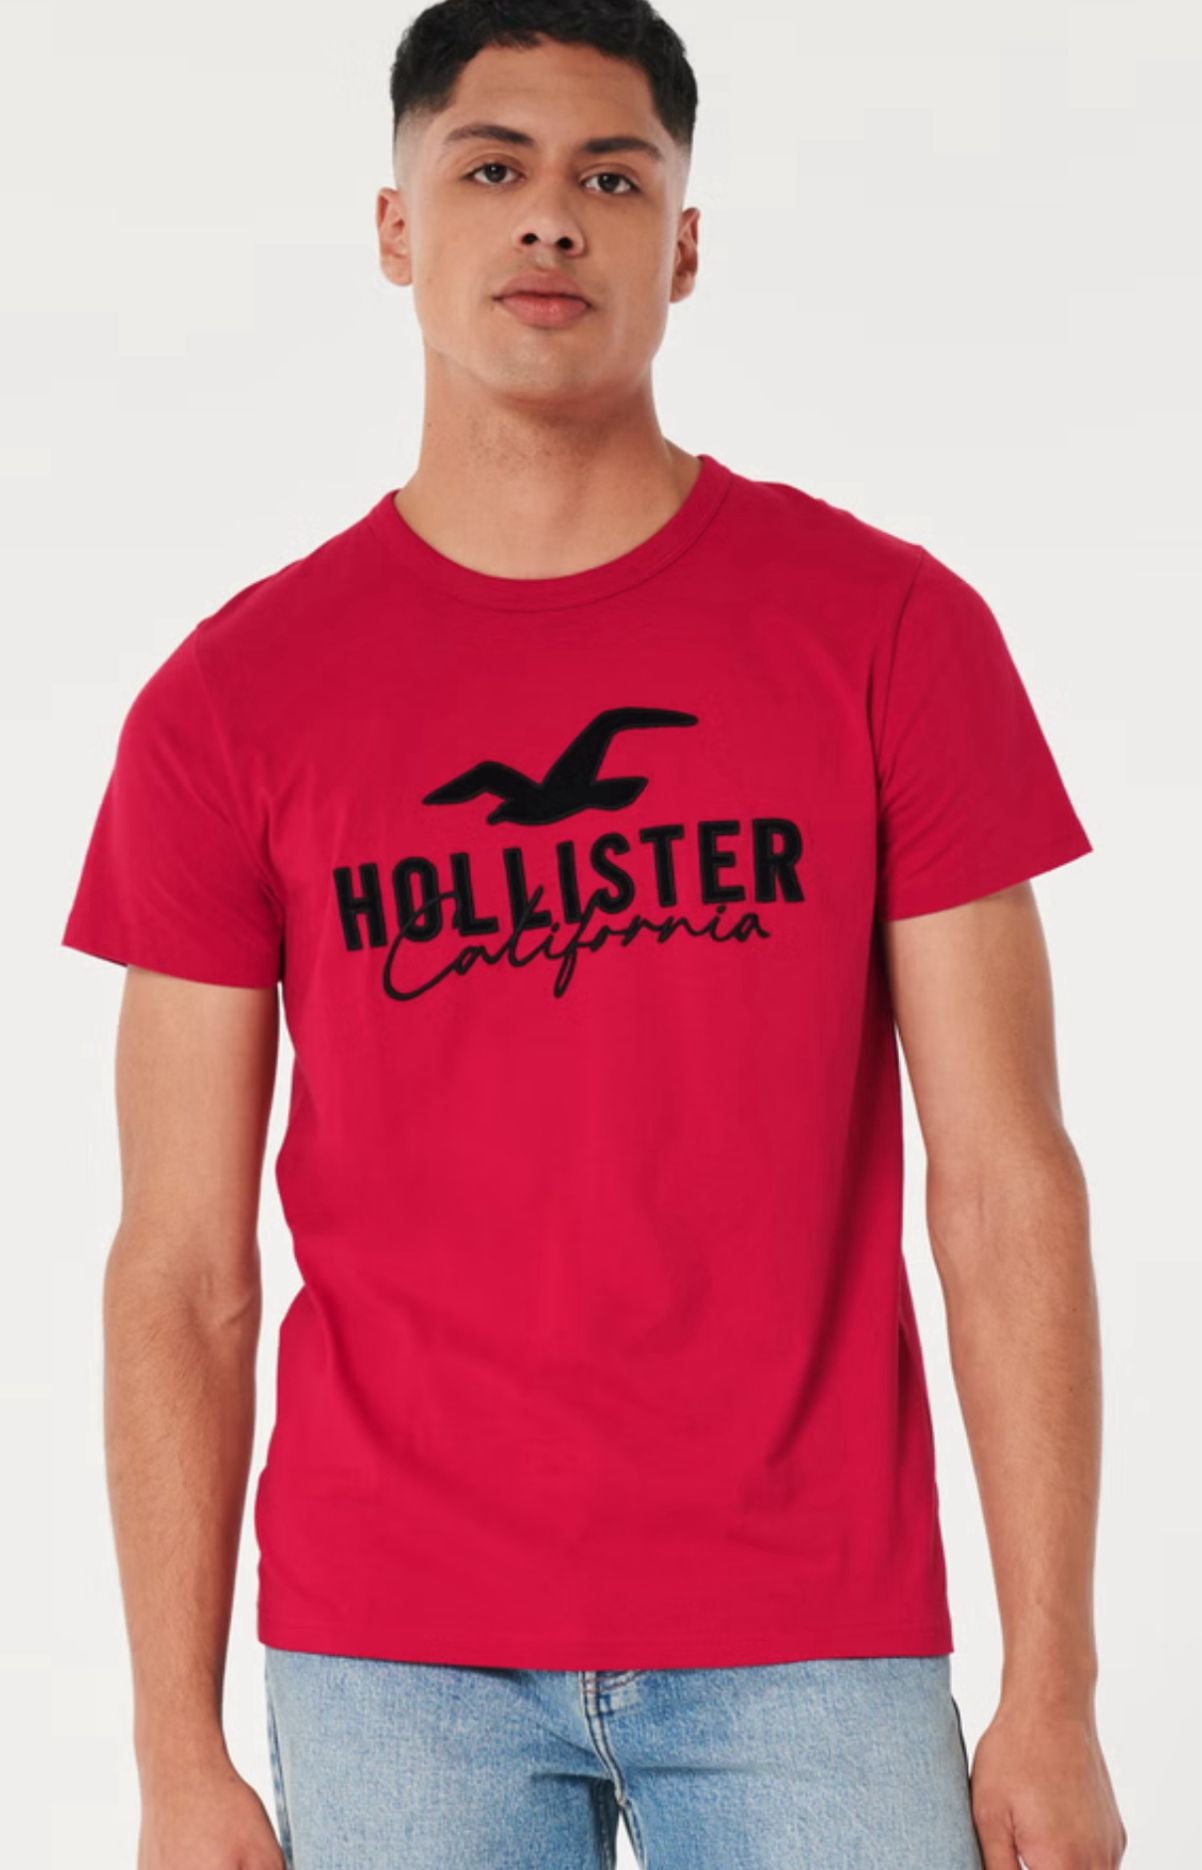 T-shirt Hollister original rojo con letras y logotipo de la marca HOLLISTER en negro.